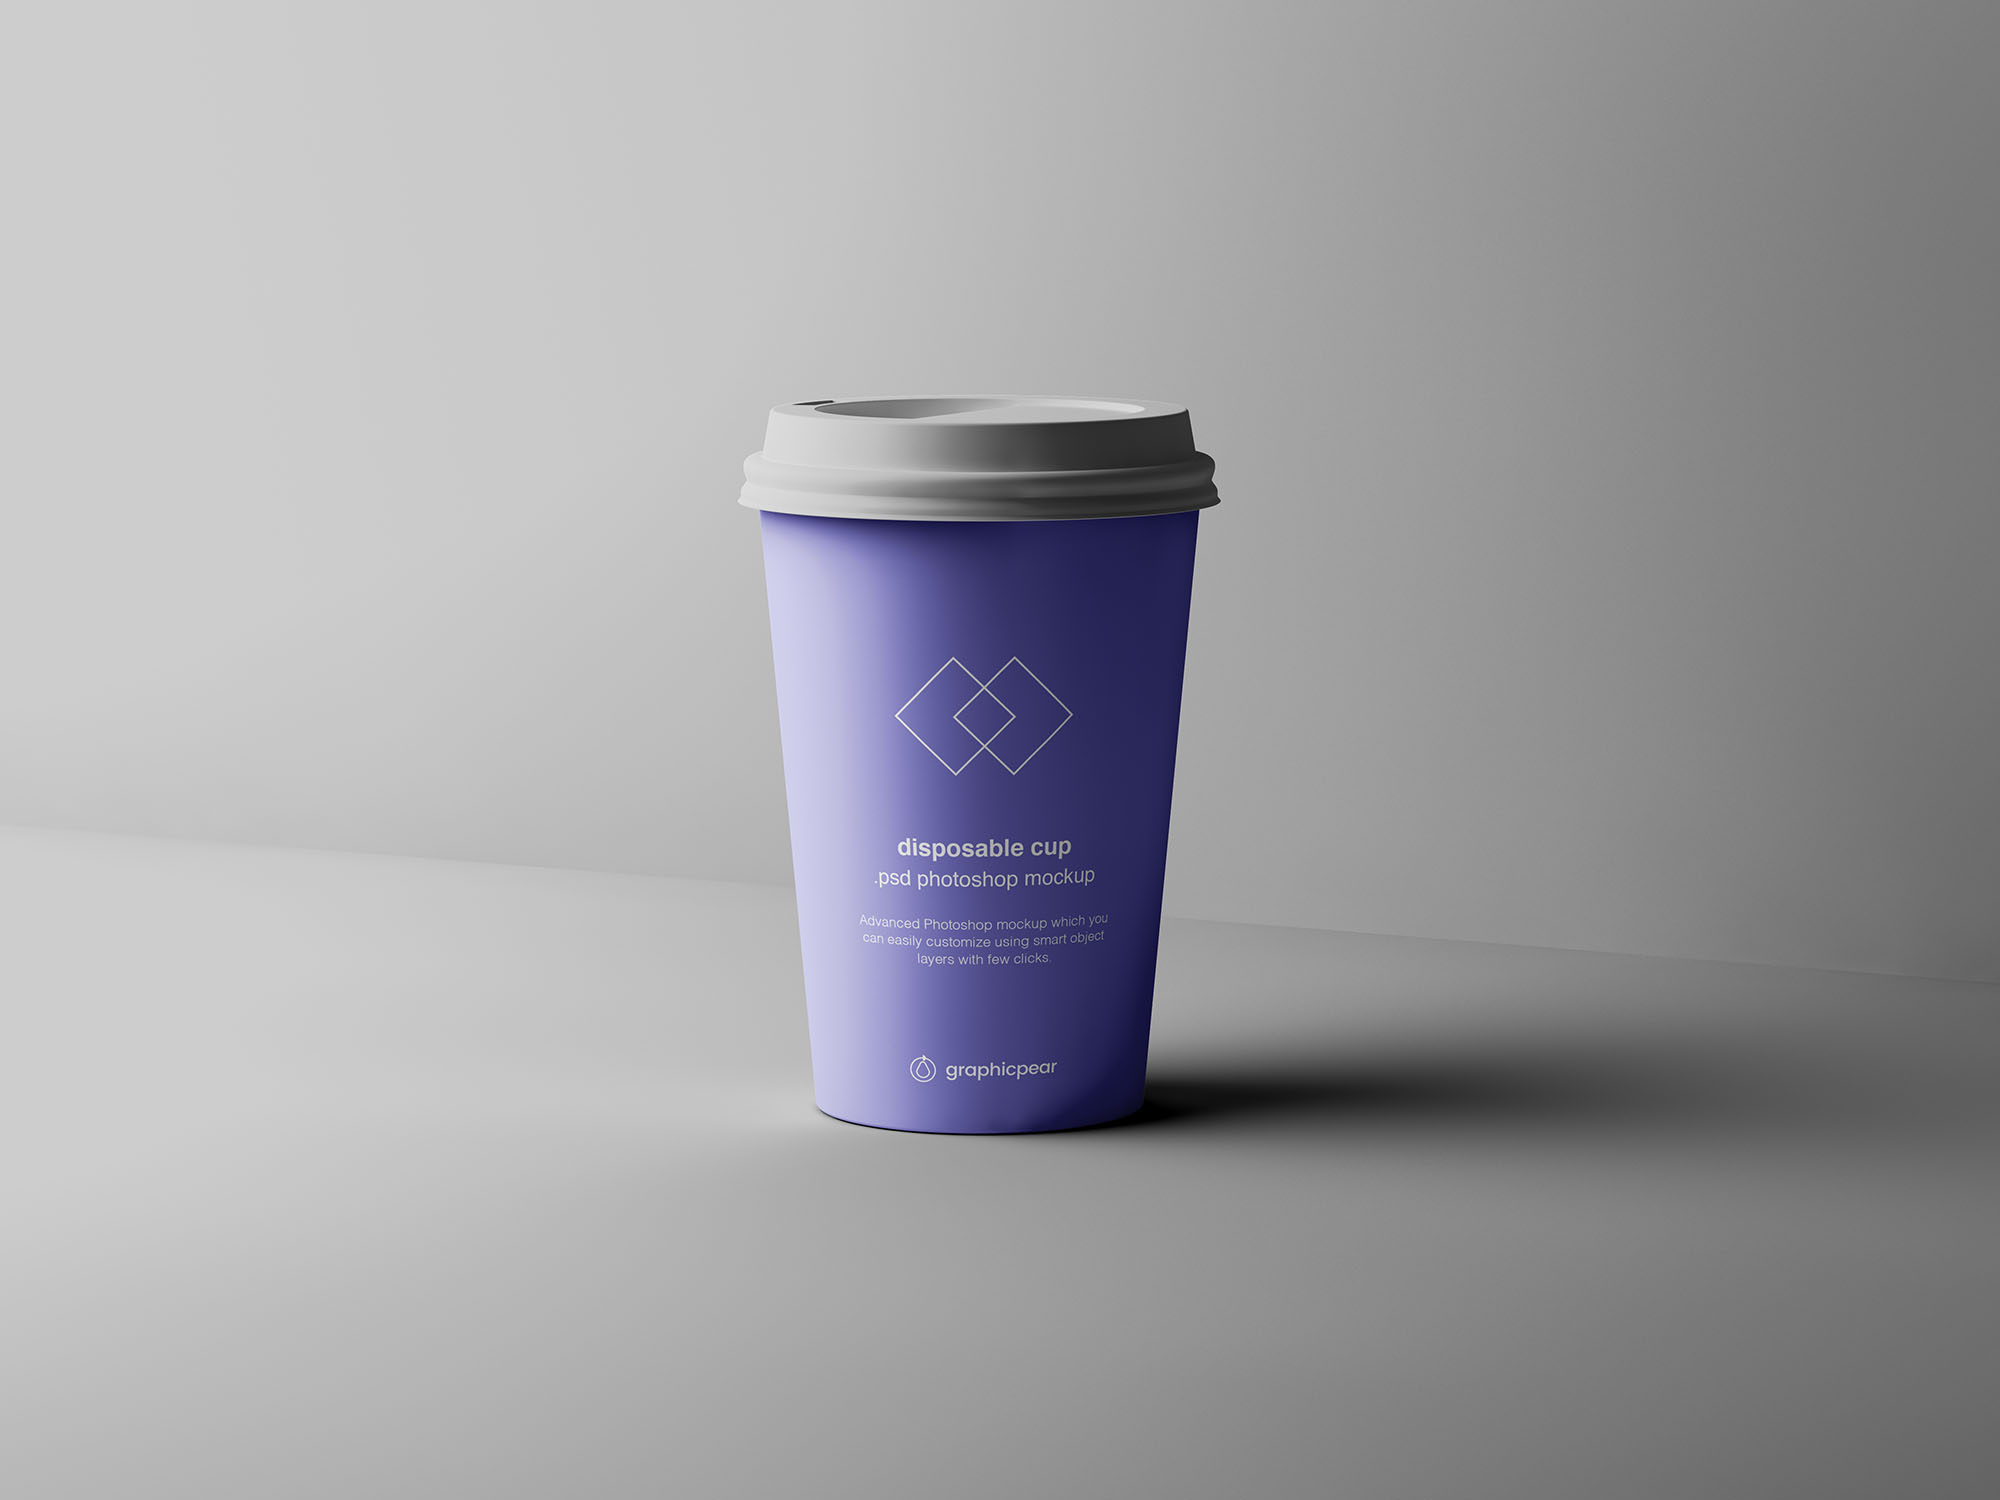 7个咖啡纸杯定制外观设计效果图样机模板 7 Coffee Cup Mockups插图(7)